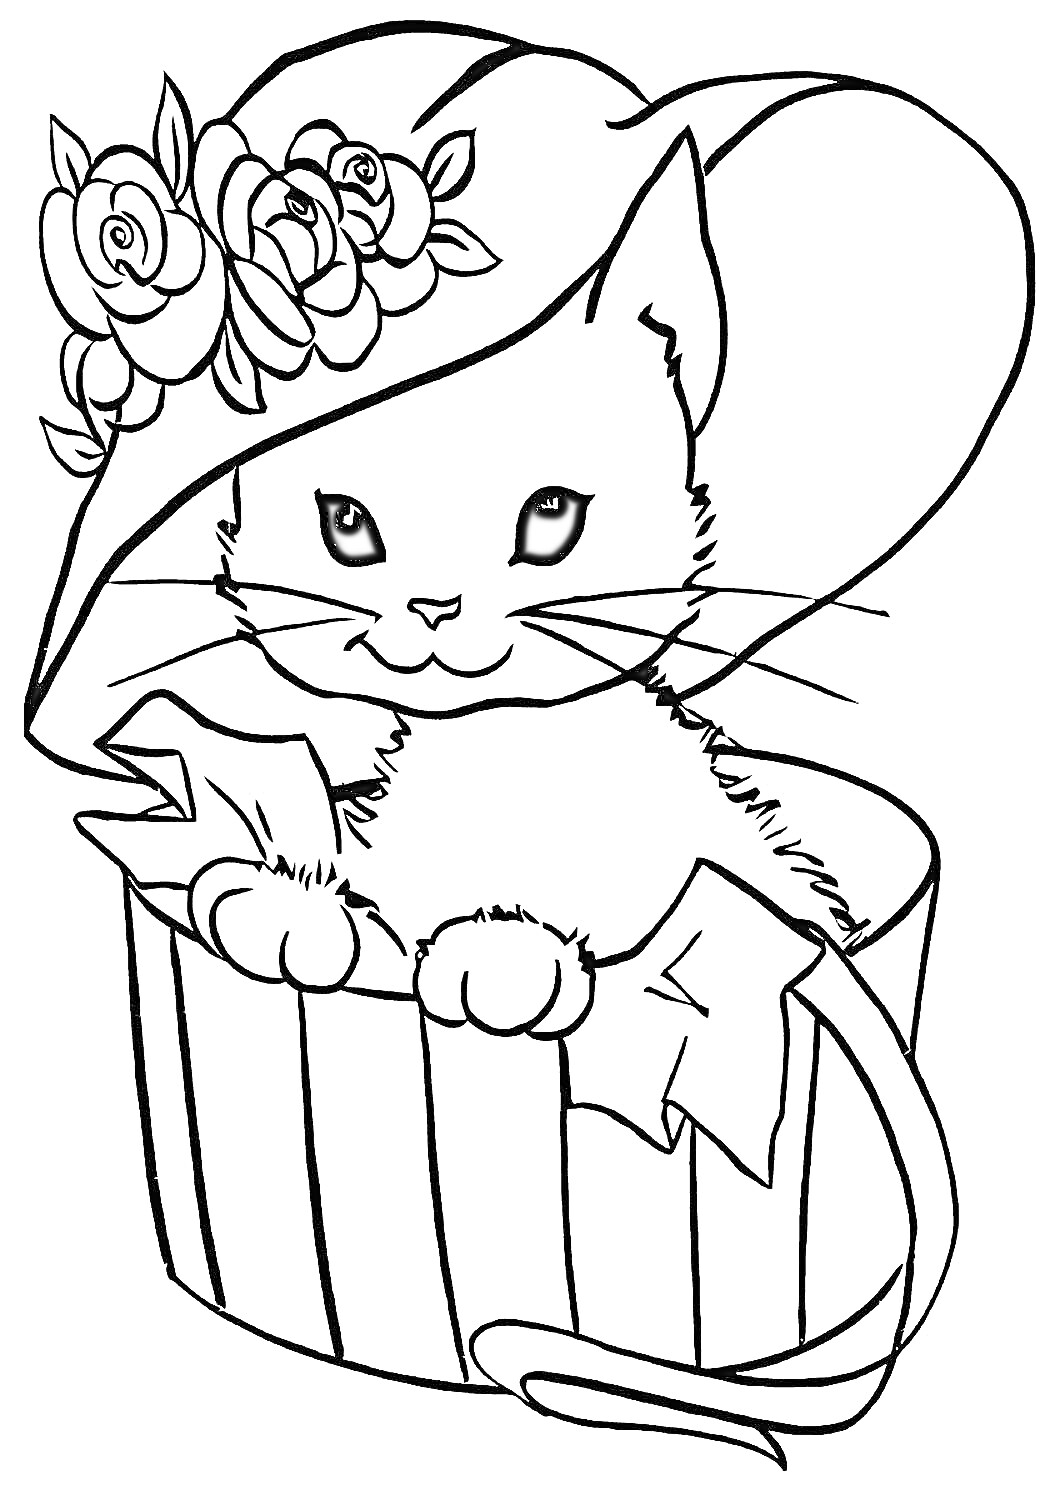 Котенок в шляпе с цветами в горшке